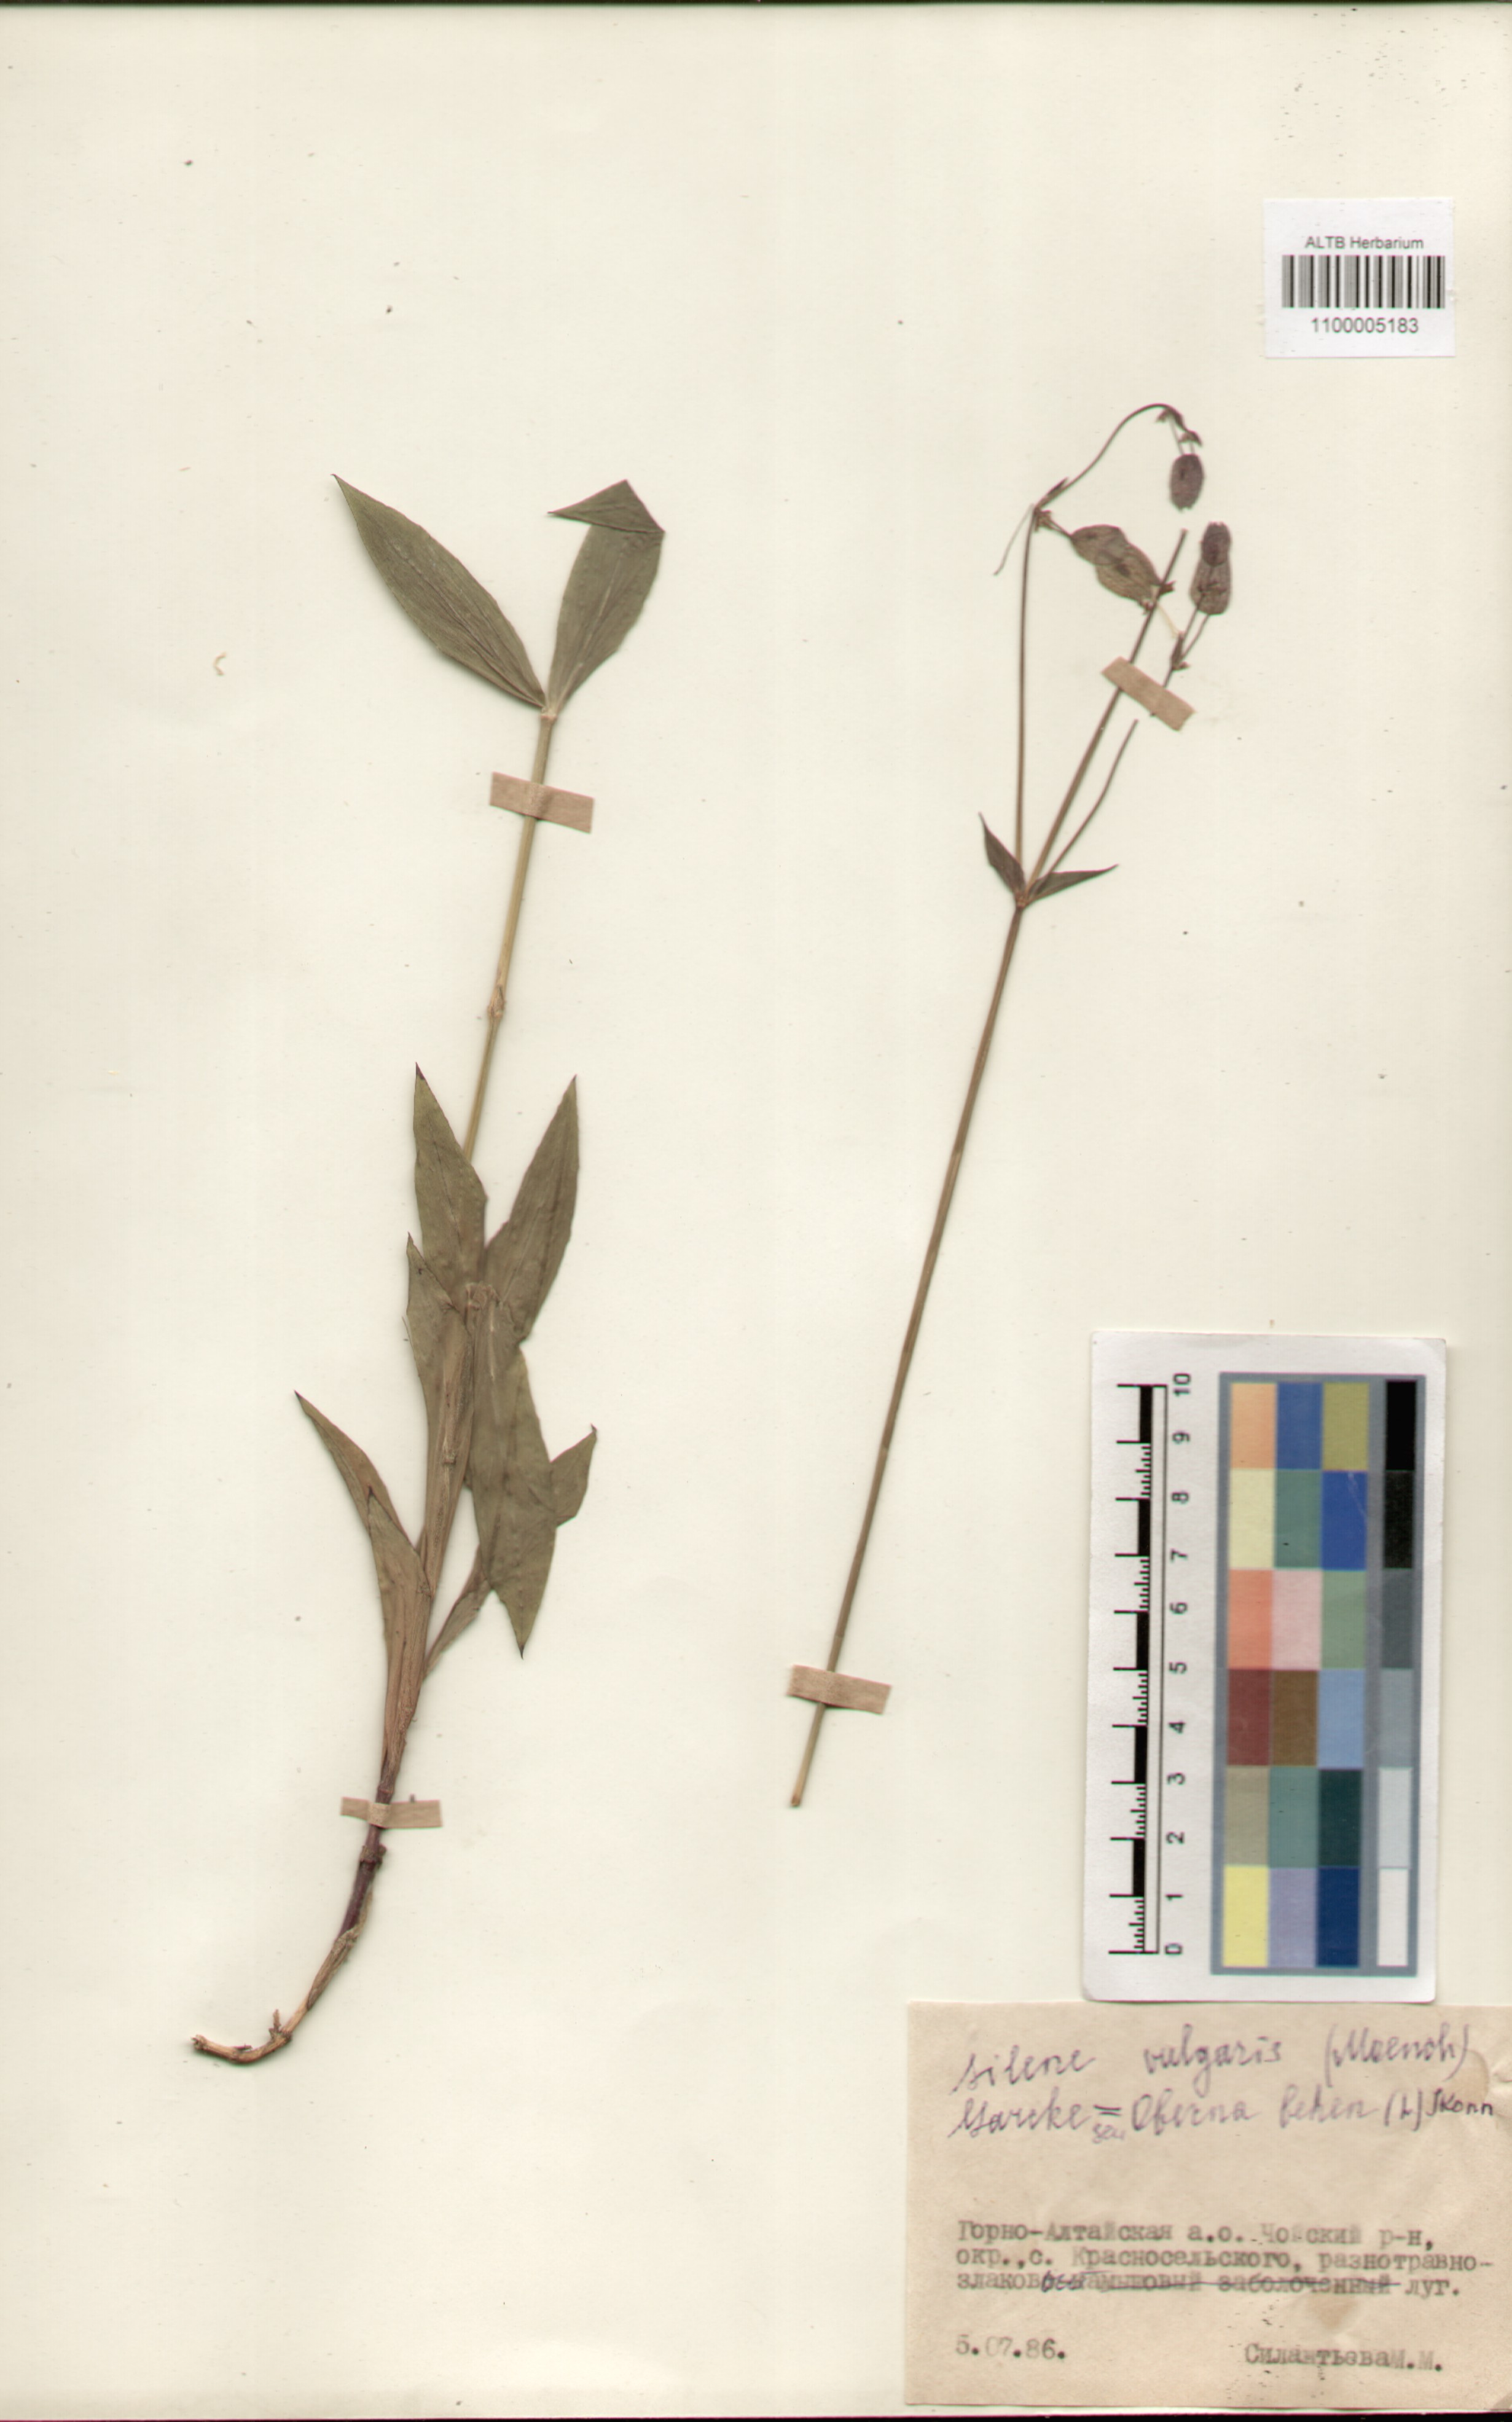 Caryophyllaceae,Silene vulgaris (Moench) Garcke.